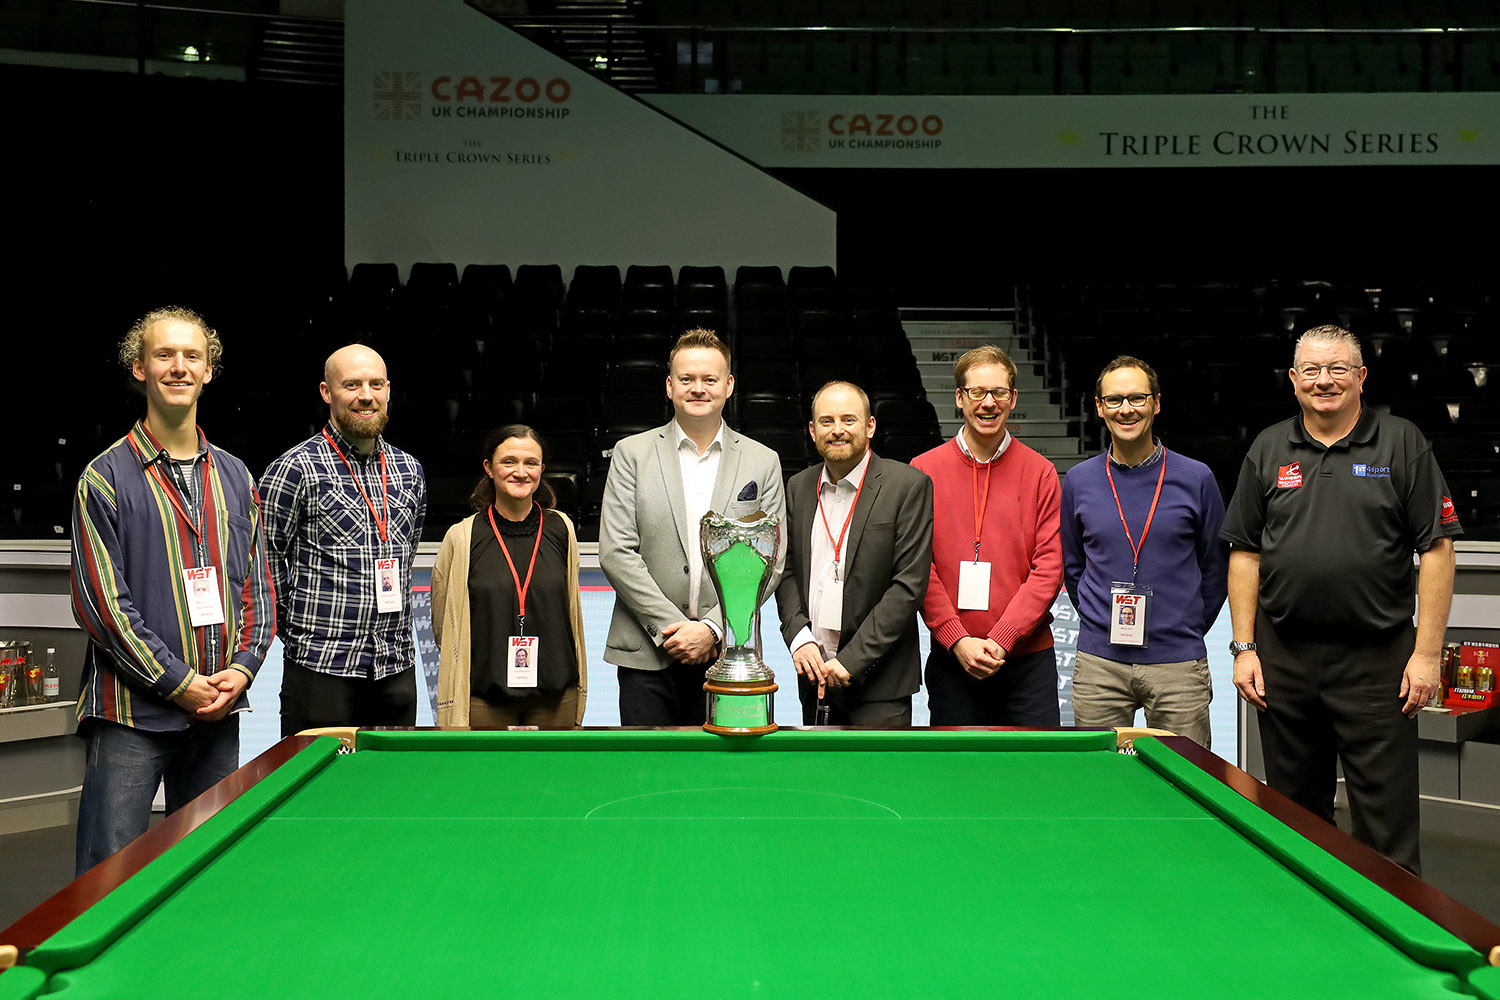 Group photo at UK Championship